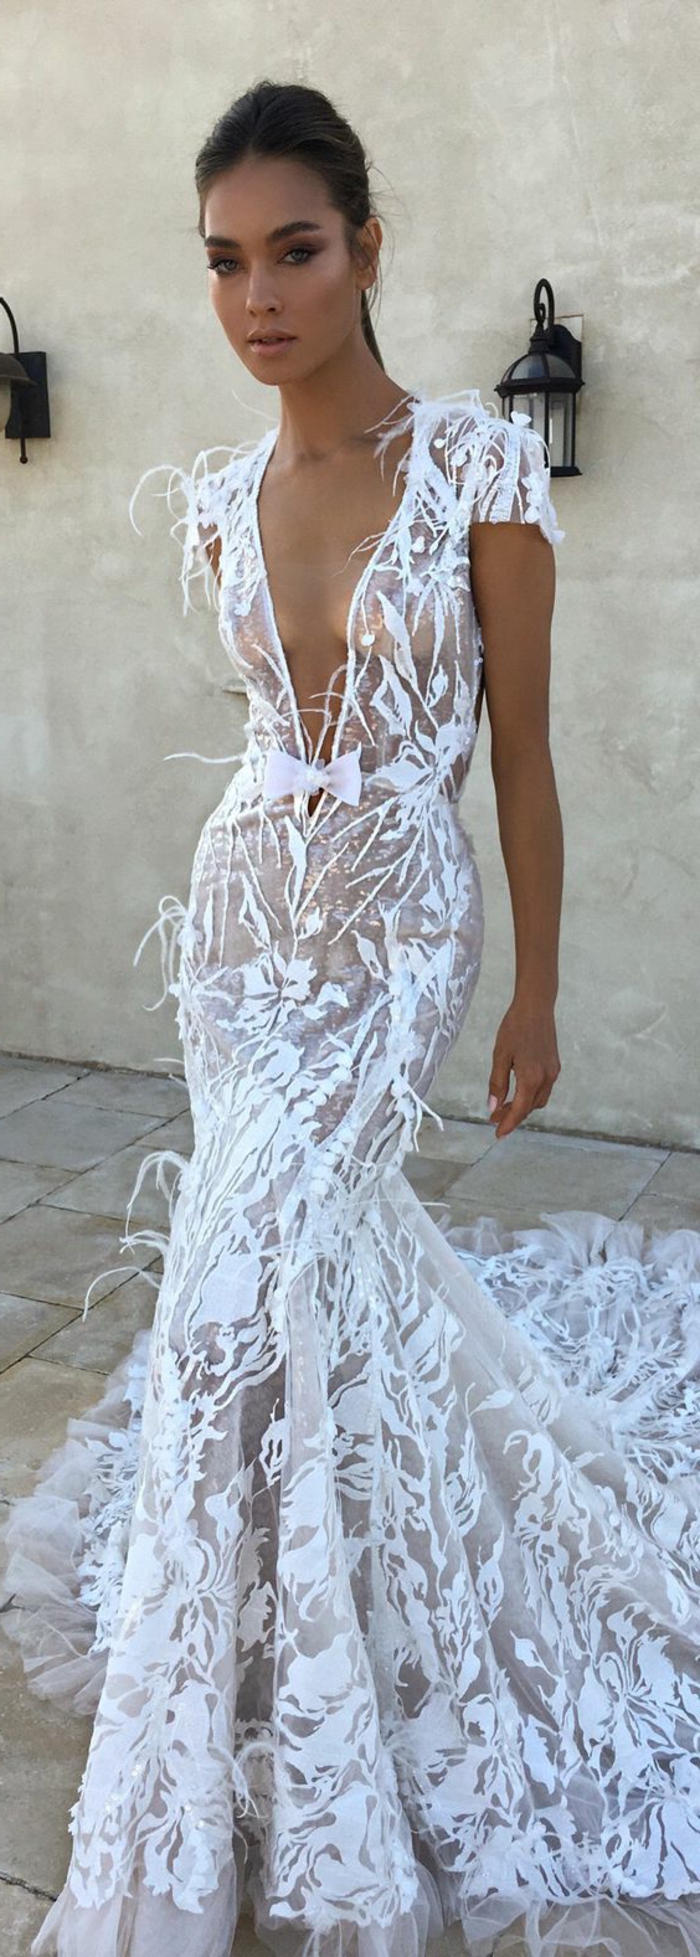 modèle de robe de mariée excentrique transparent, manches courtes, décolleté profond en V, plumes d'autruche blanches sut toute la longueur